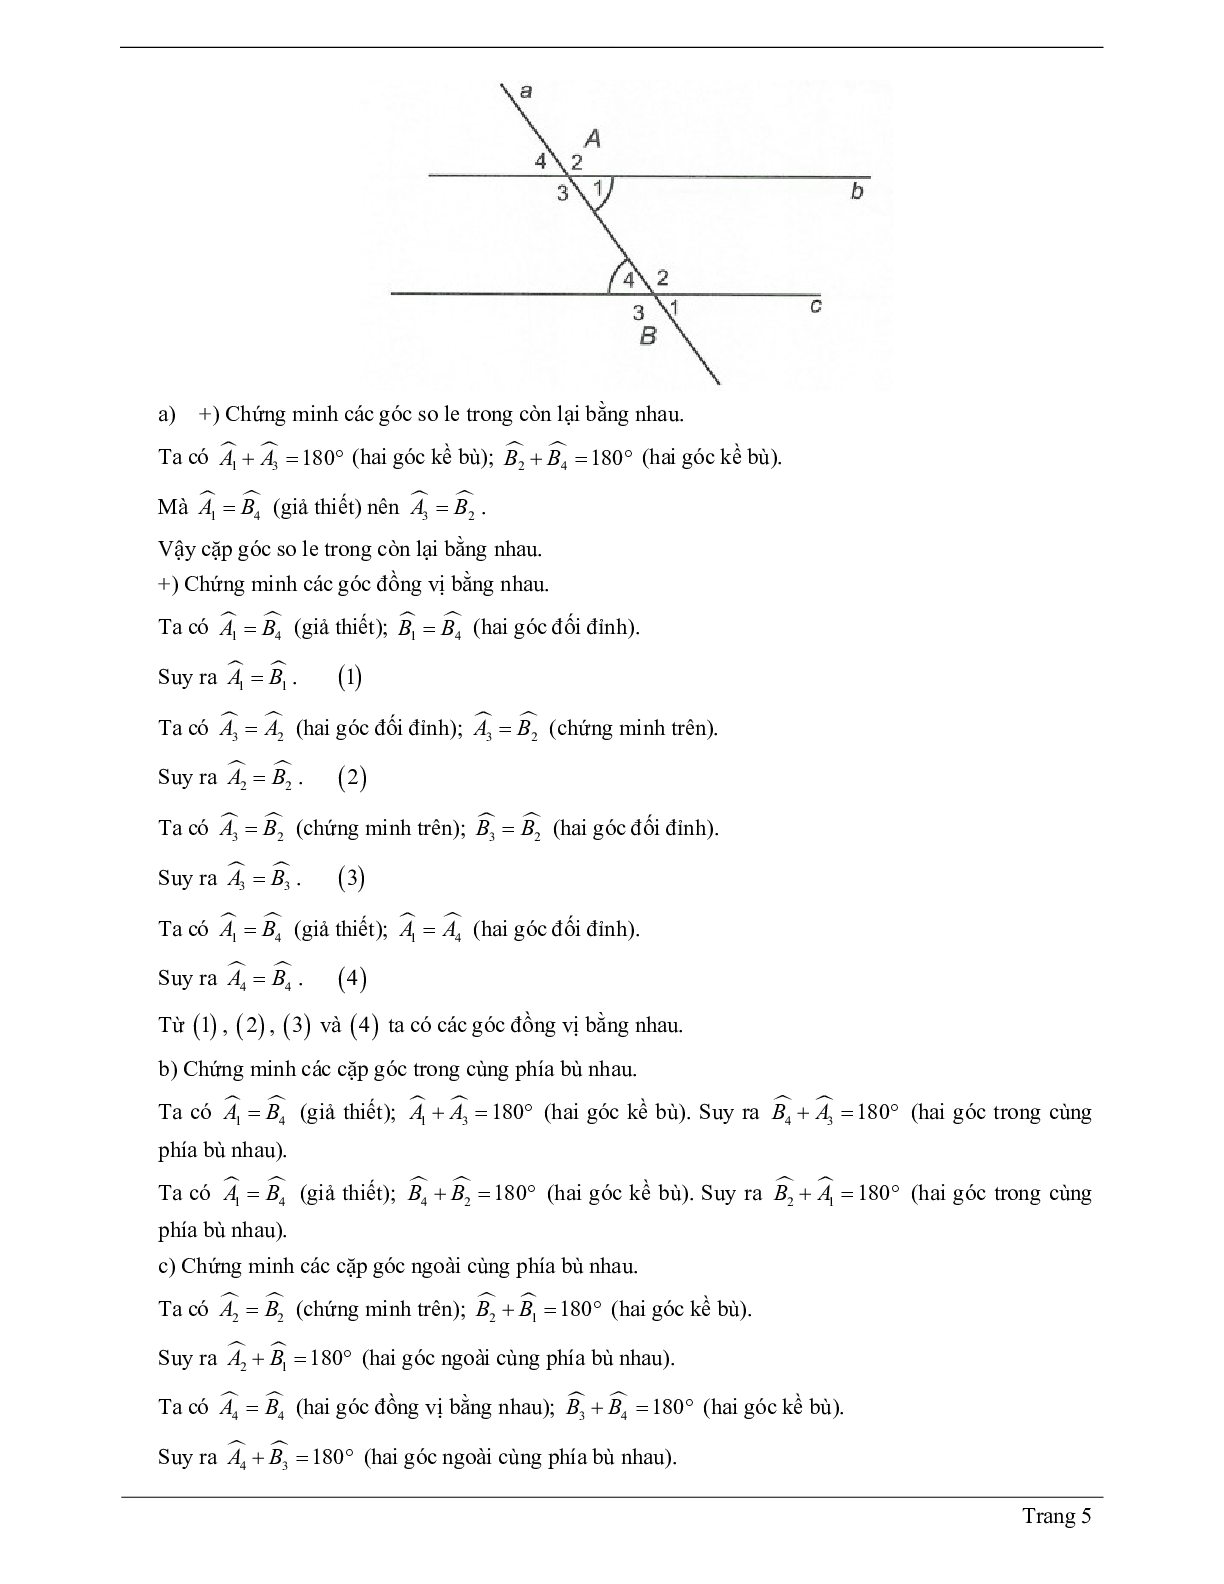 Lý thuyết Toán 7 có đáp án: Góc tạo bởi một đường thẳng cắt hai đường thẳng (trang 5)